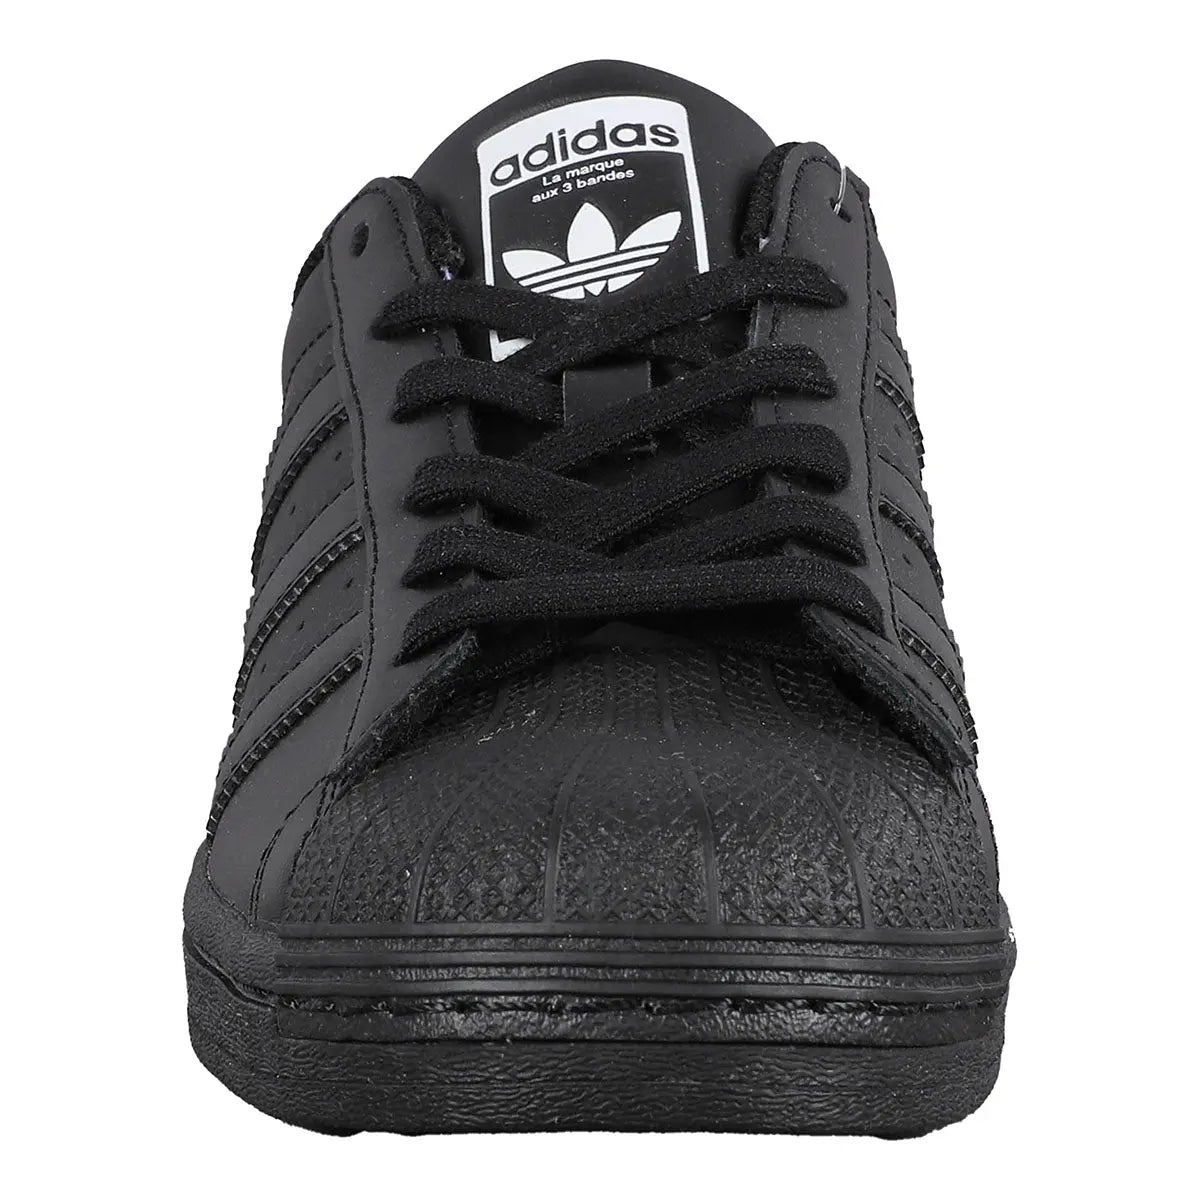 Men's shoes adidas Superstar Core Black/ Ftw White/ Core Black